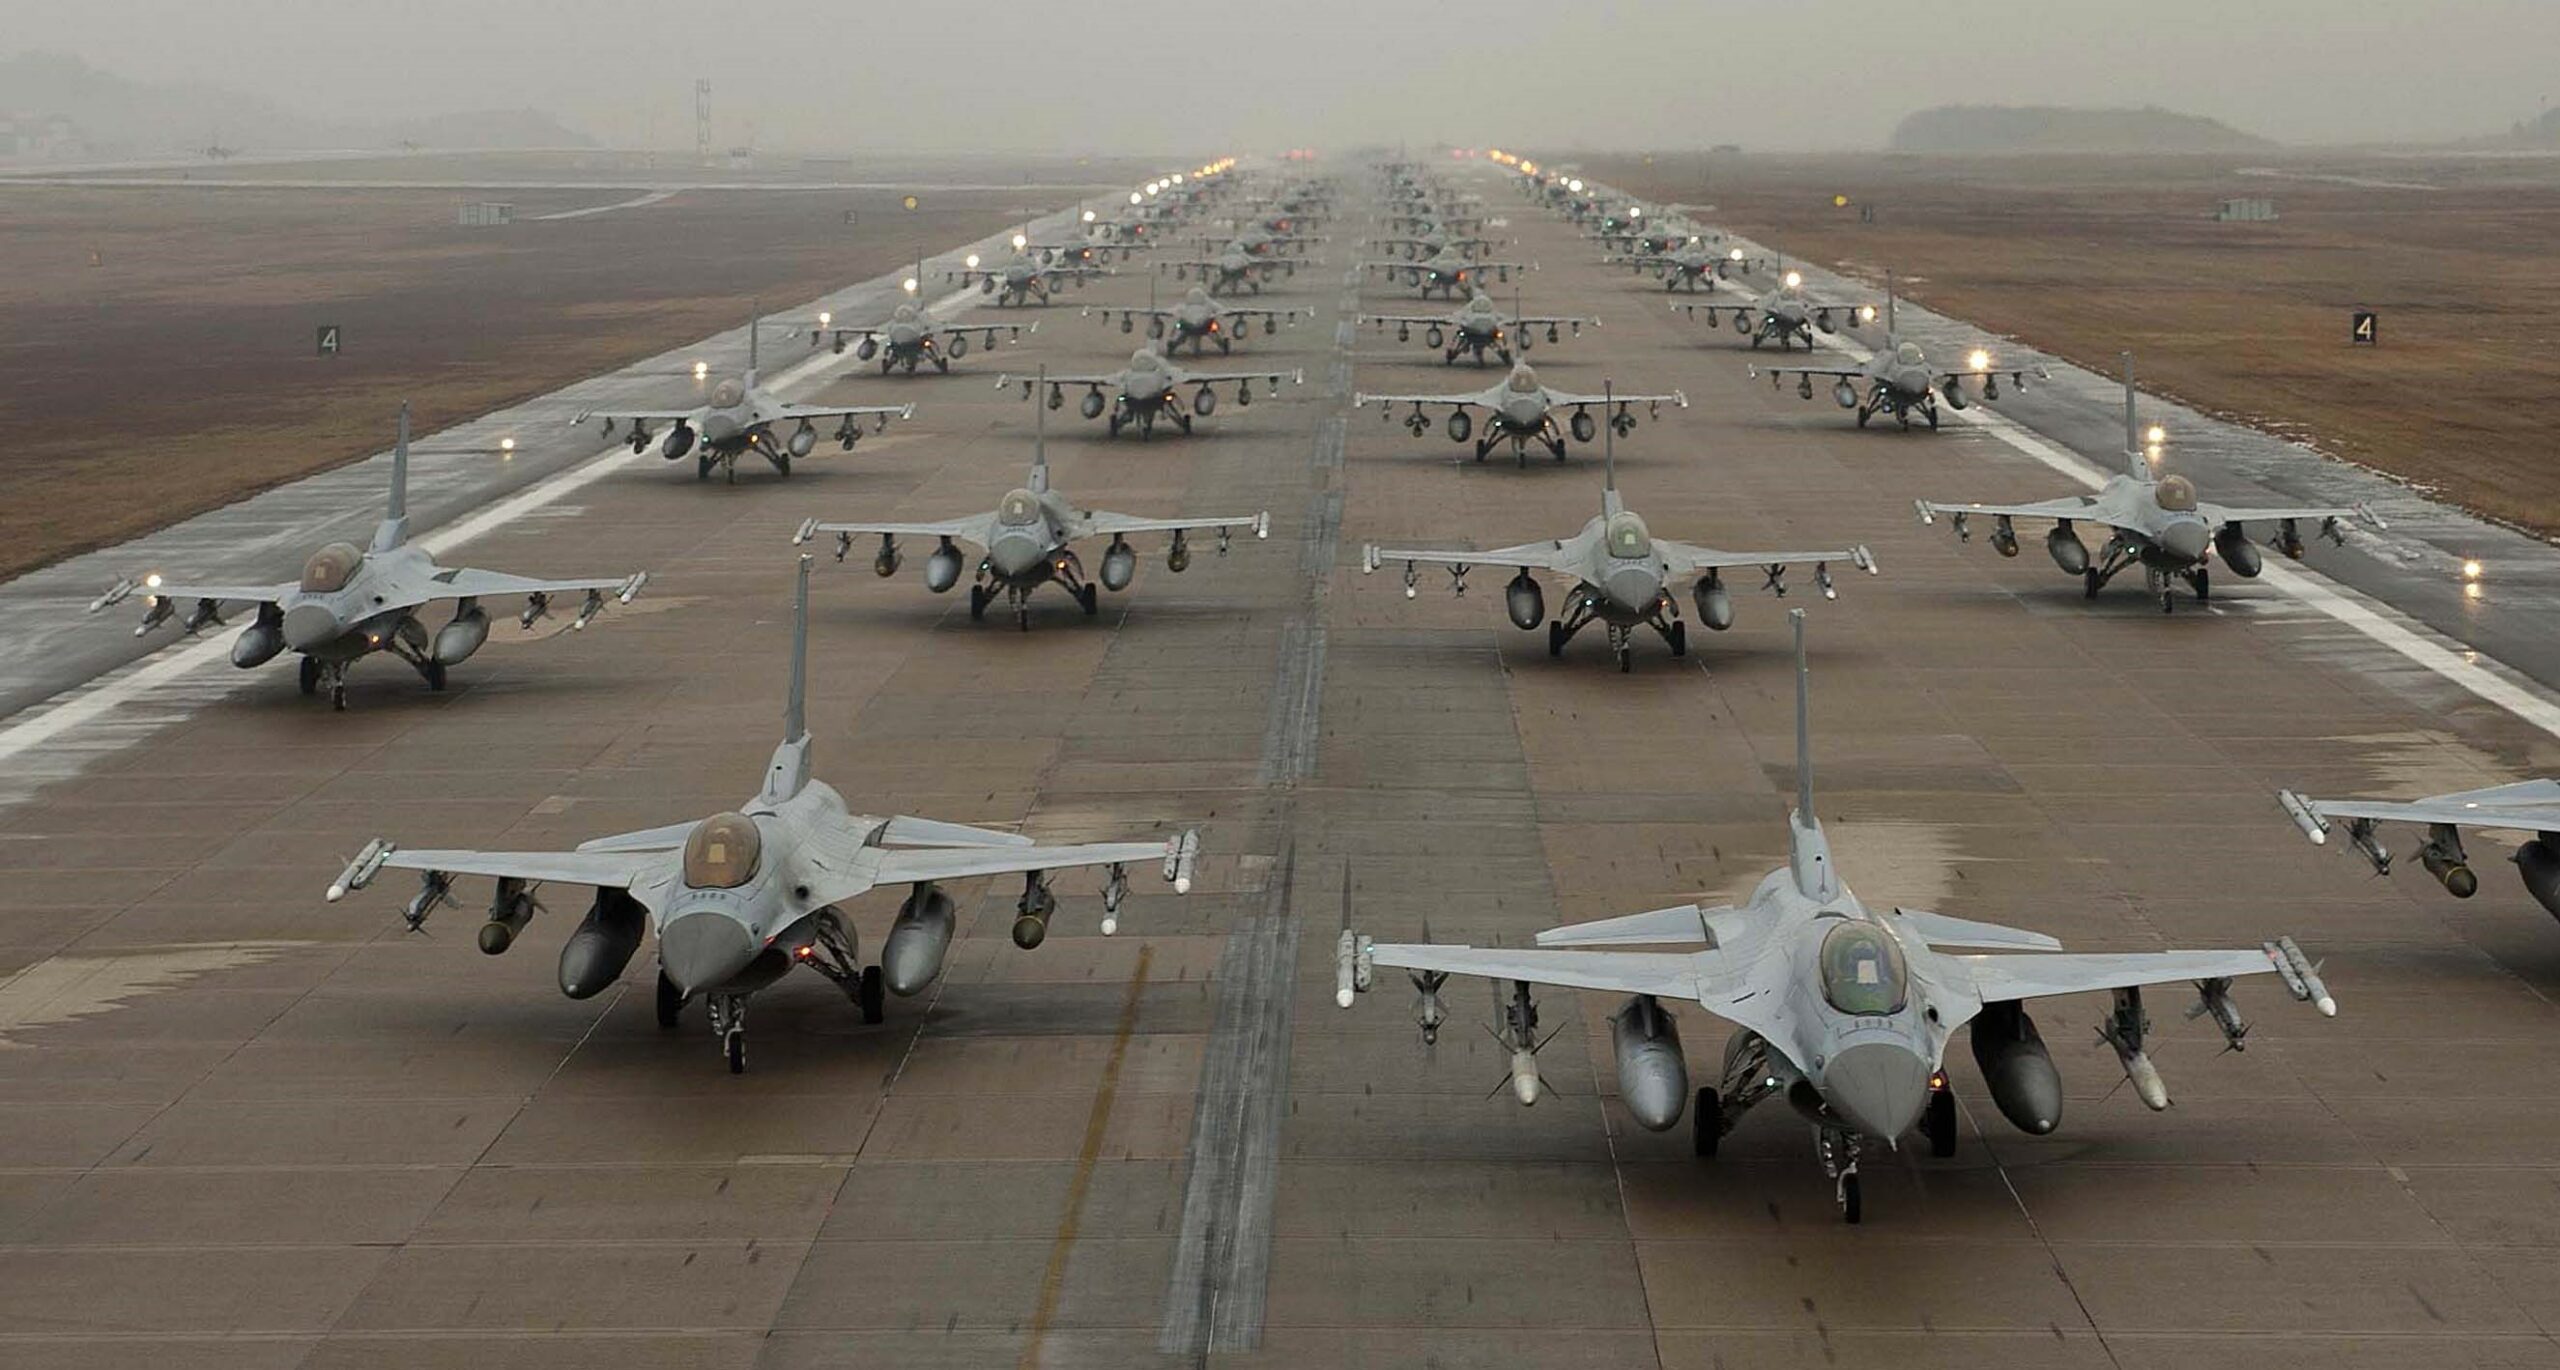 Столтенберг: 100 военных самолетов НАТО готовы к применению. У России ещё есть шанс отказаться от нападения на Украину, иначе это дорого ей обойдётся